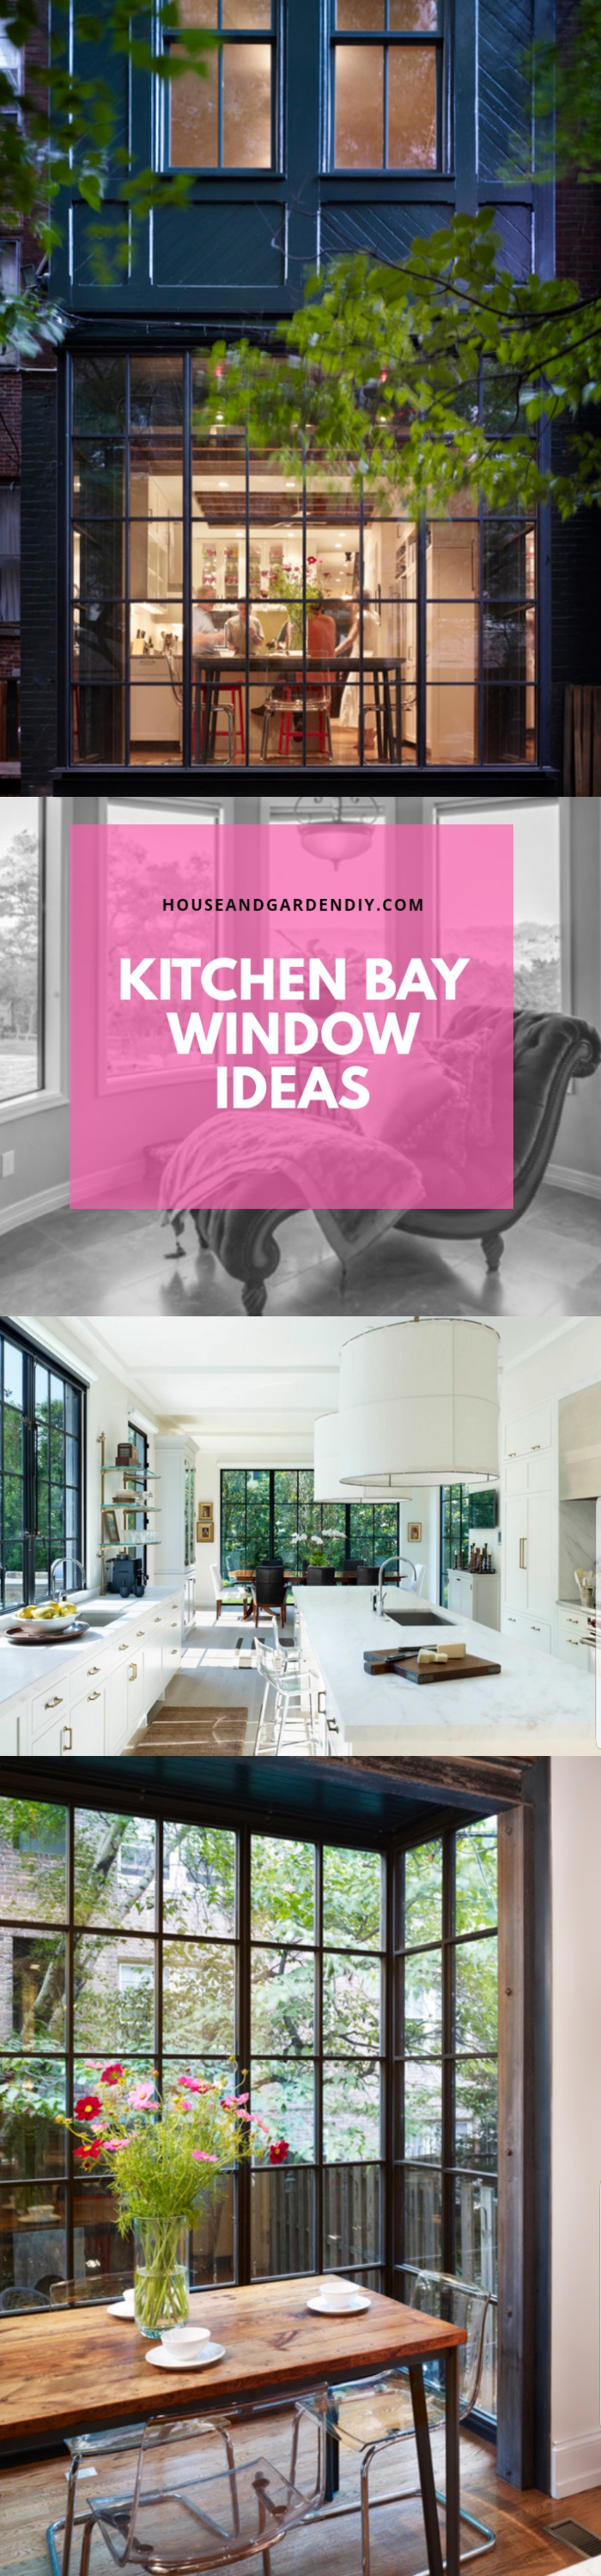 Kitchen bay window ideas